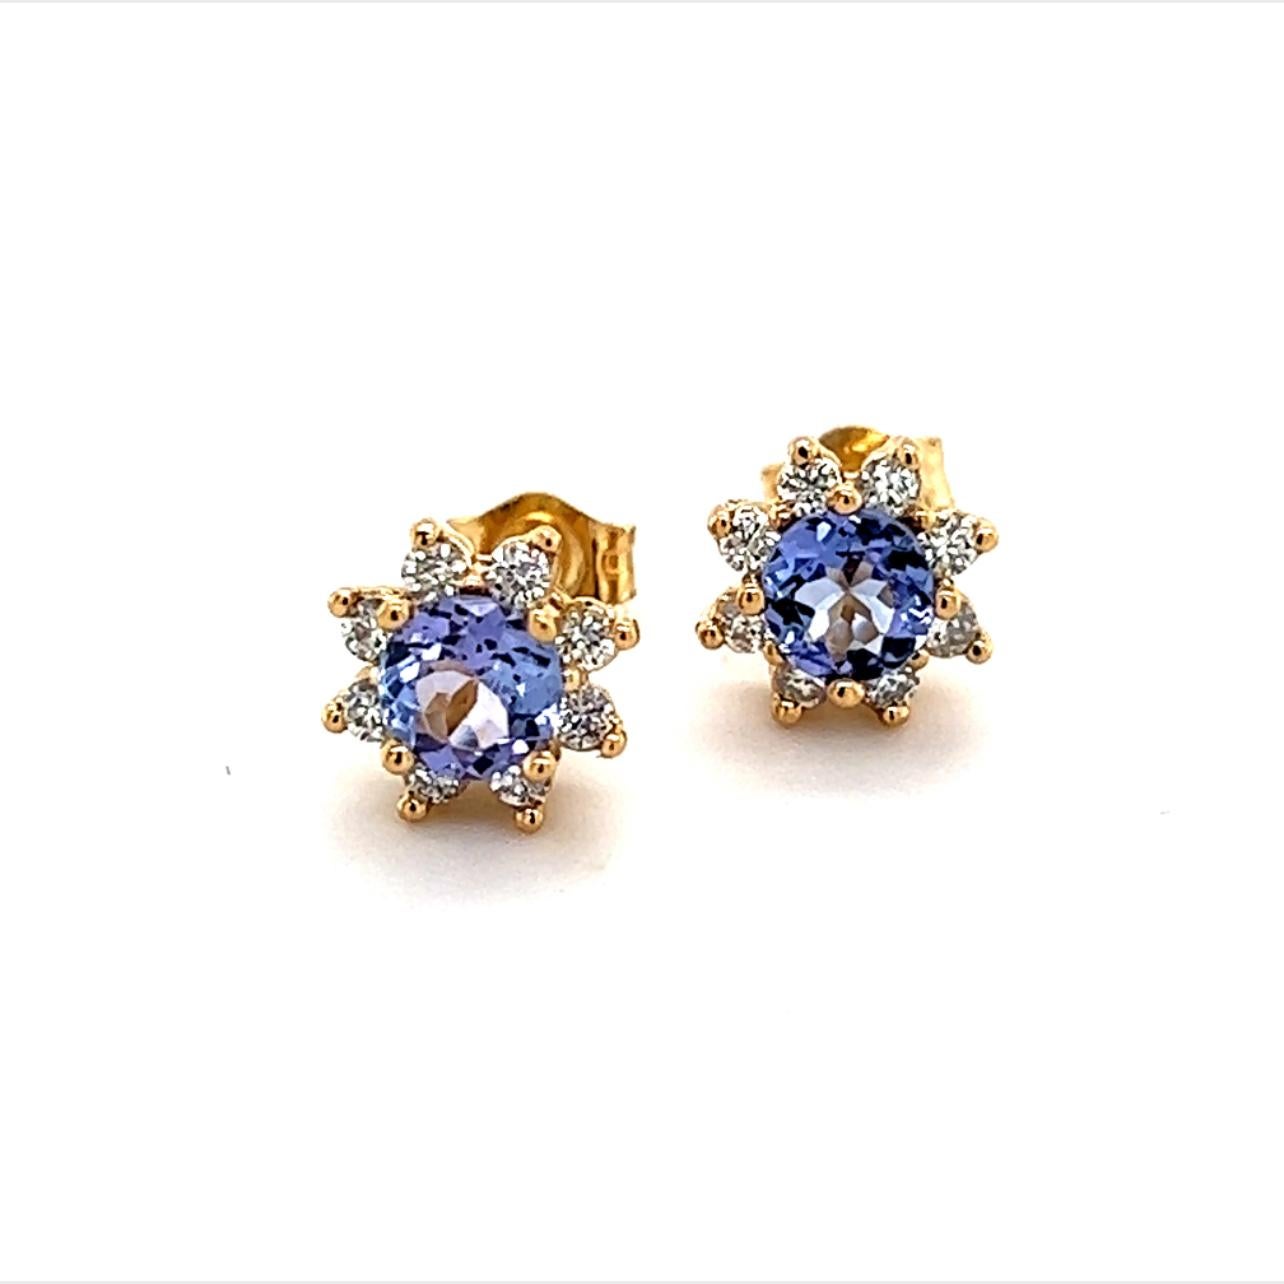 Natürlicher Saphir Diamant Ohrringe 14k Gold 1,0 TCW zertifiziert $2,490 210747

Dieses schöne Schmuckstück wurde von Enrico Kassini entworfen!

Nichts sagt mehr 